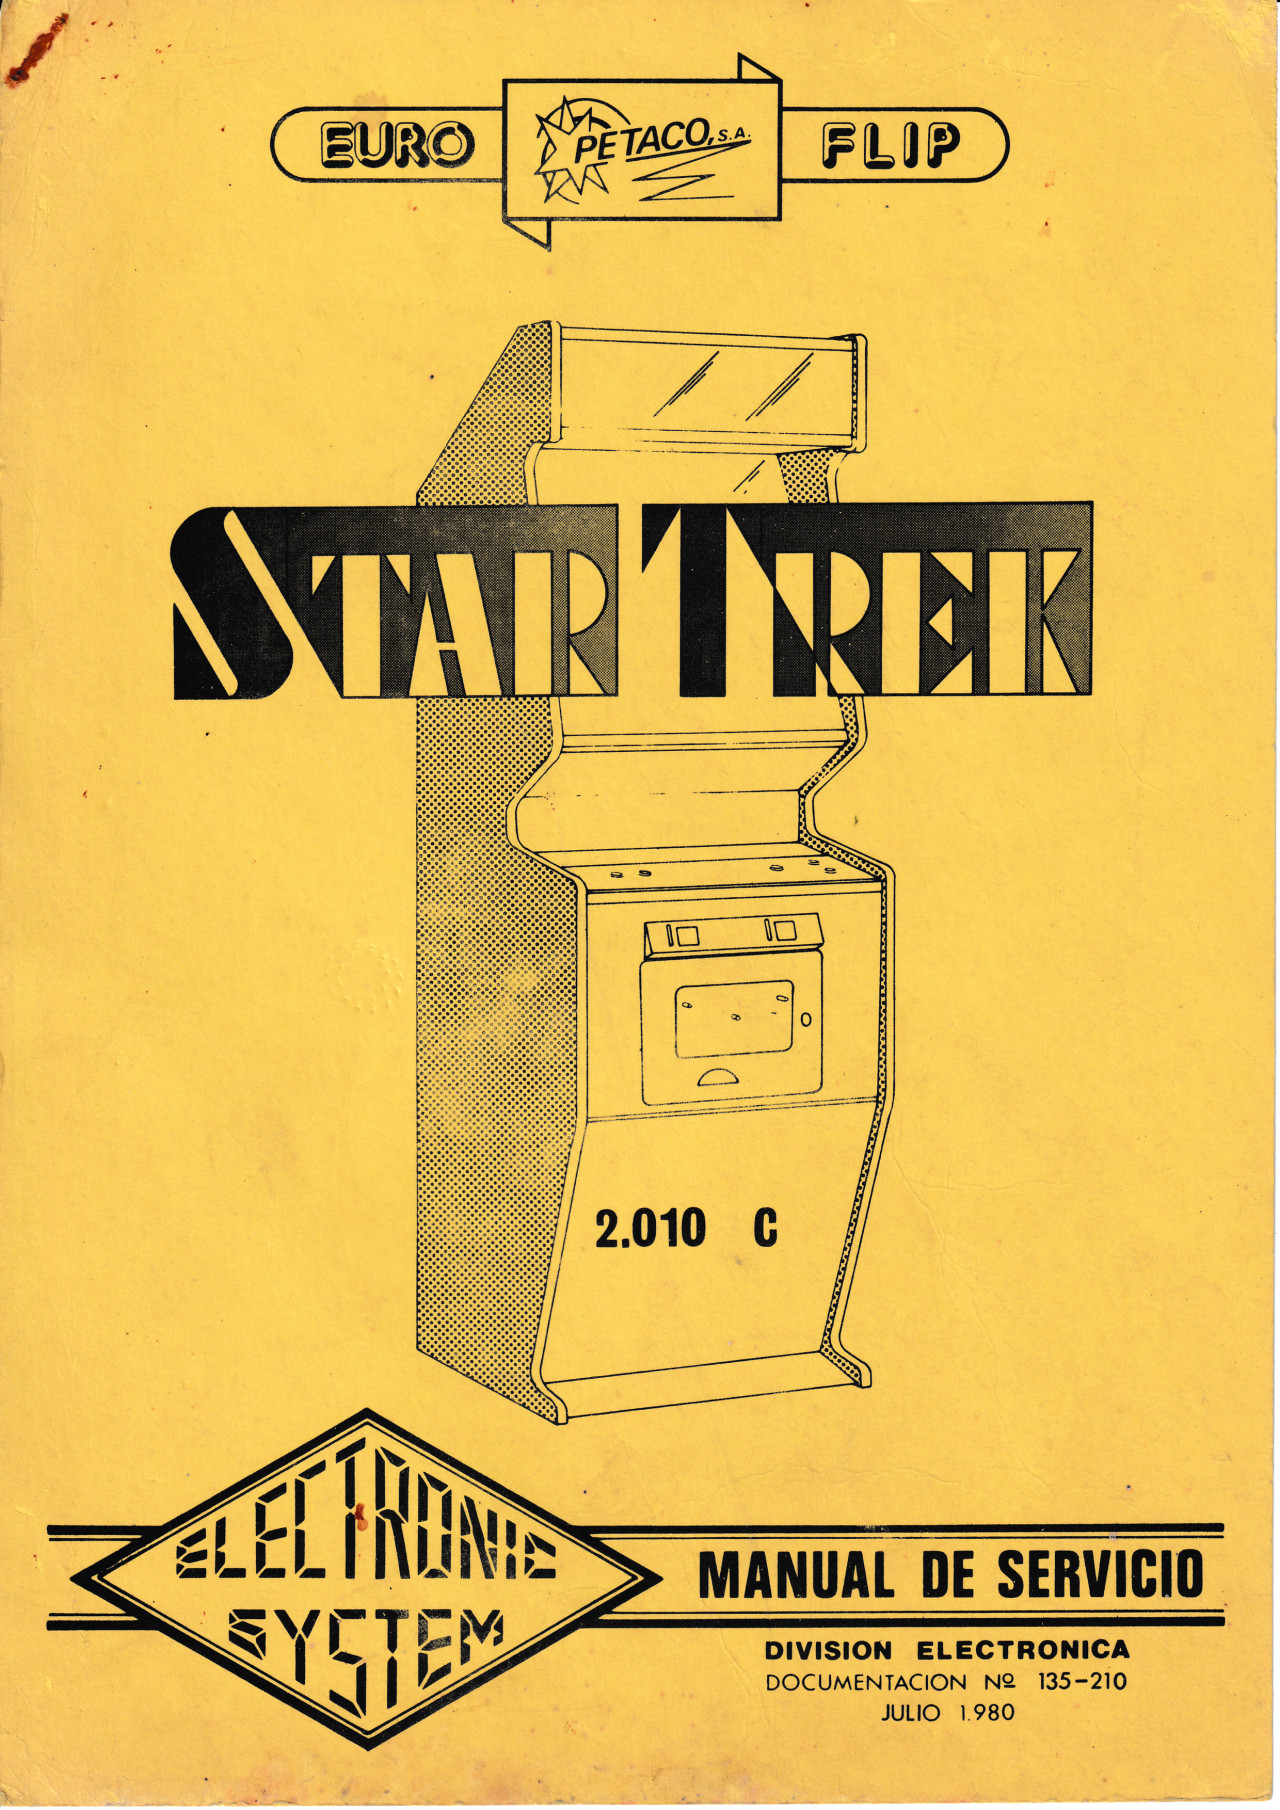 Portada del manual de Star Trek (Astro Fighter) de Petaco, 1980. Imagen: Recreativas.org